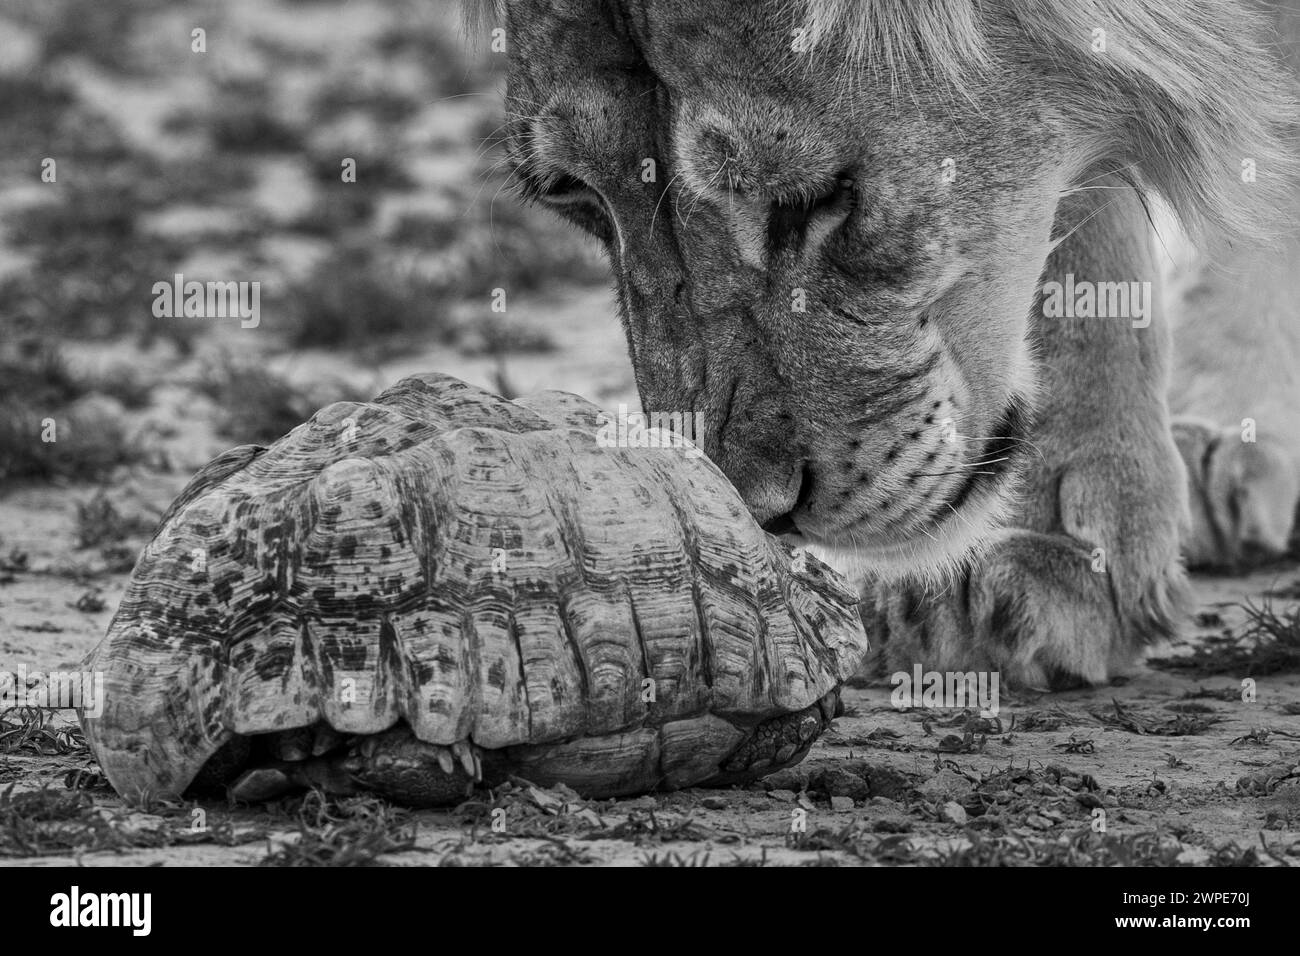 Lions d'Afrique AFRIQUE des images DÉCHIRANTES montrent la bataille d'une lionne mère défiante pour protéger ses oursons contre l'attaque d'un jeune homme agressif Banque D'Images